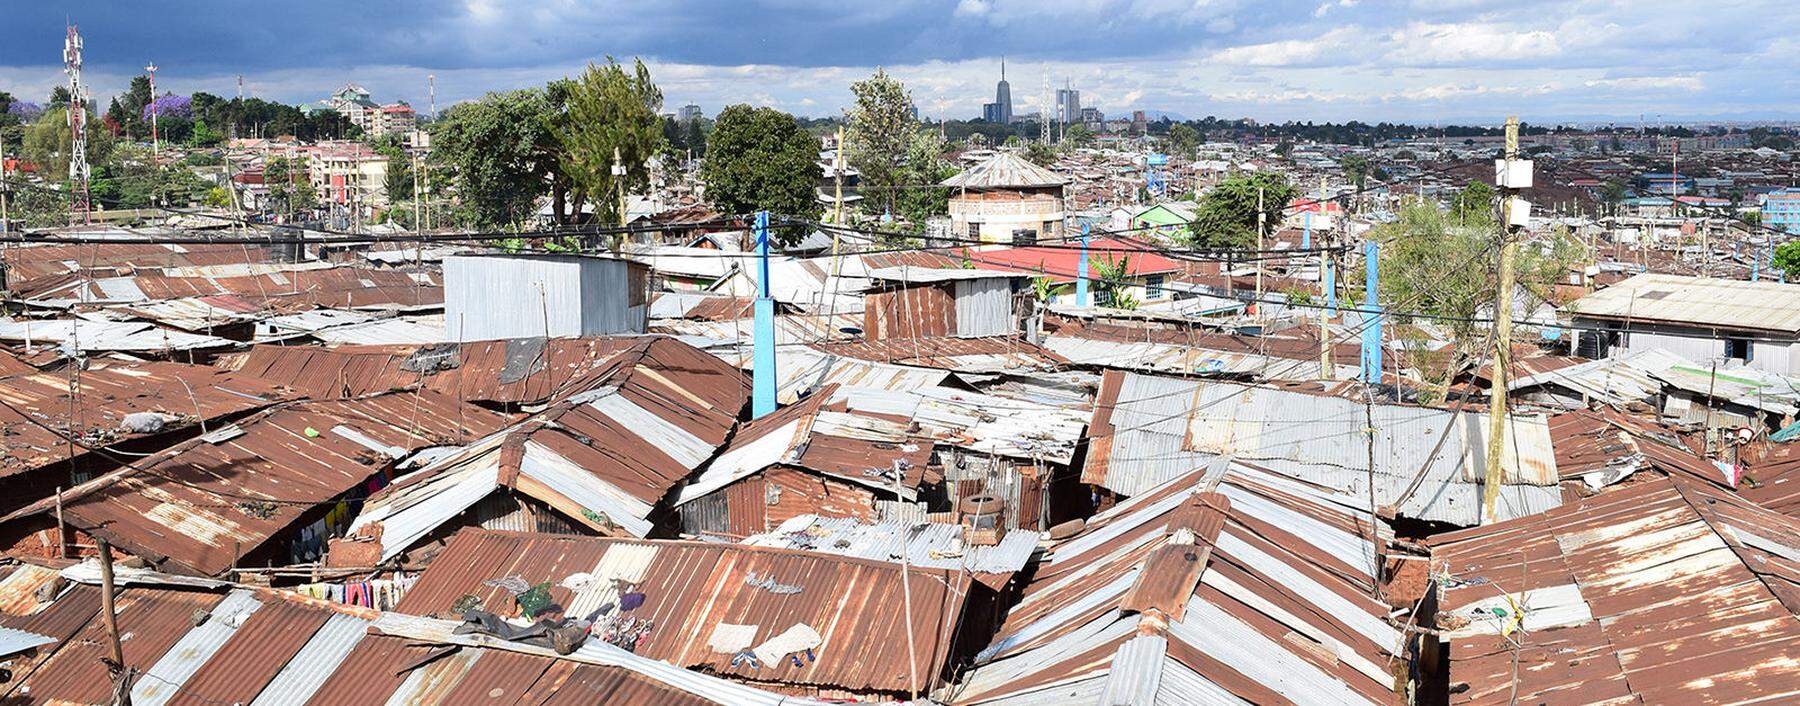 Einer der größten Slums Afrikas liegt in Kenias Hauptstadt Nairobi.